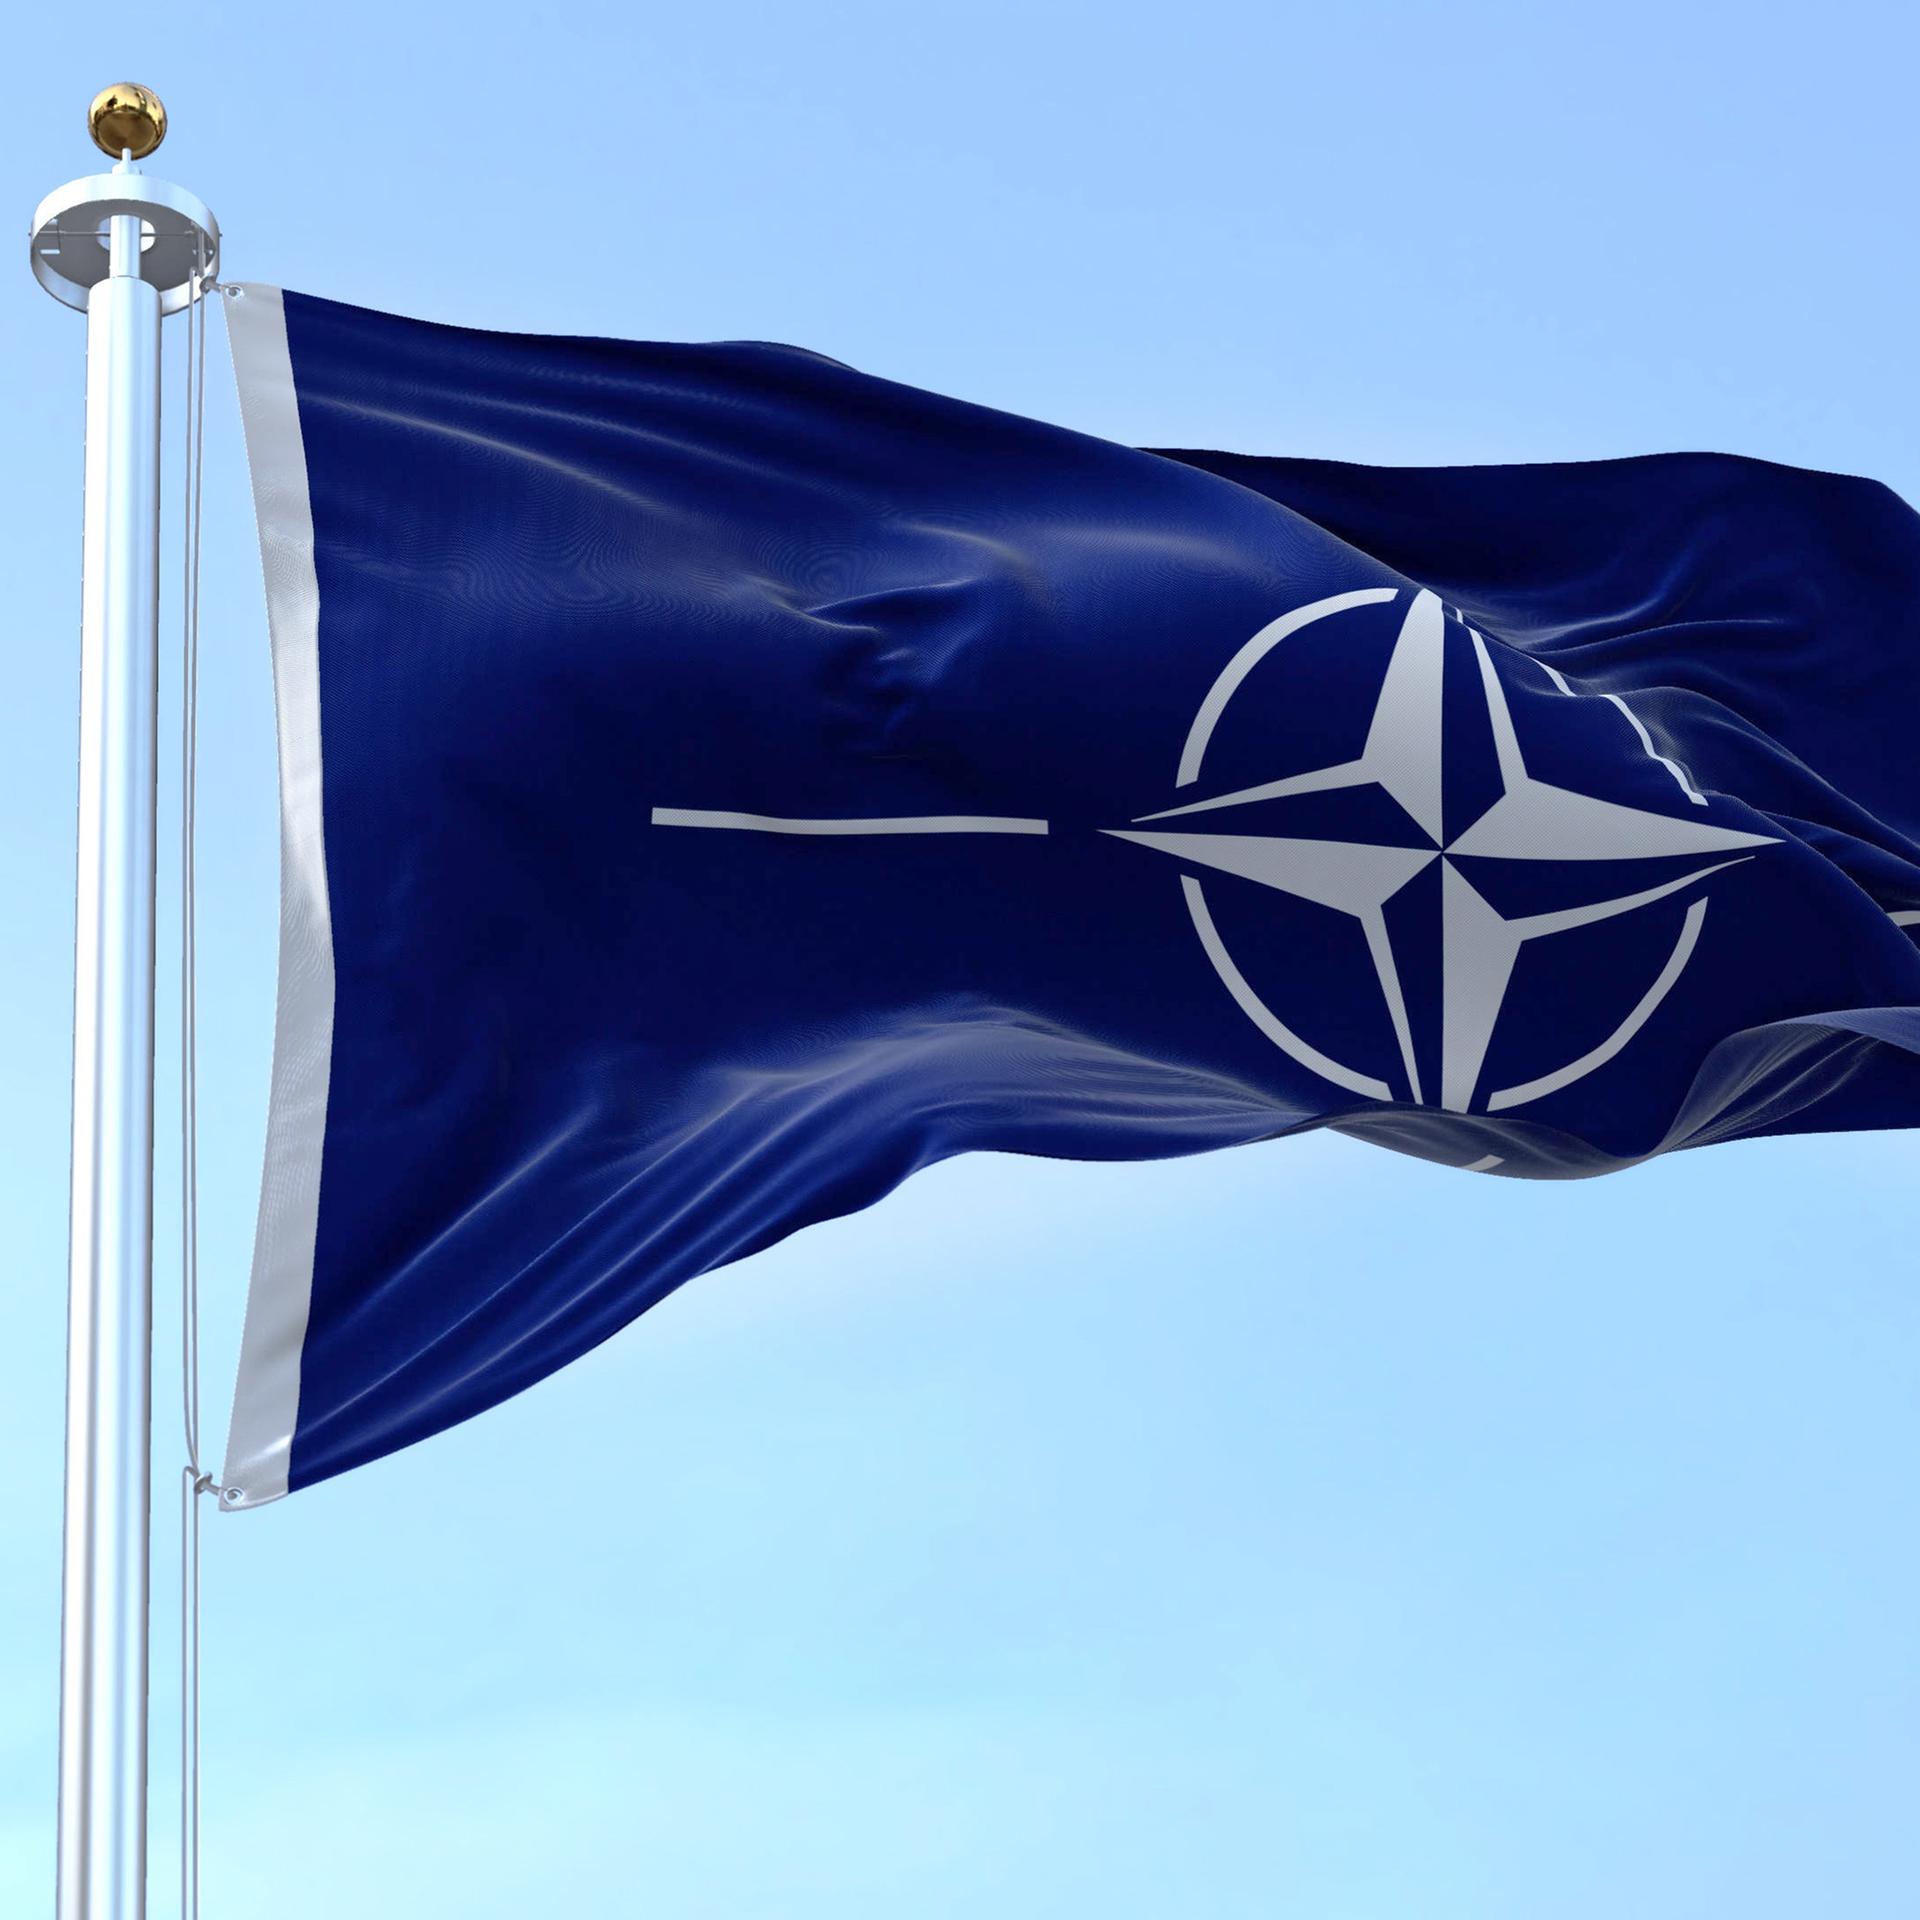 75 Jahre NATO - Ein Riese auf dem Drahtseil